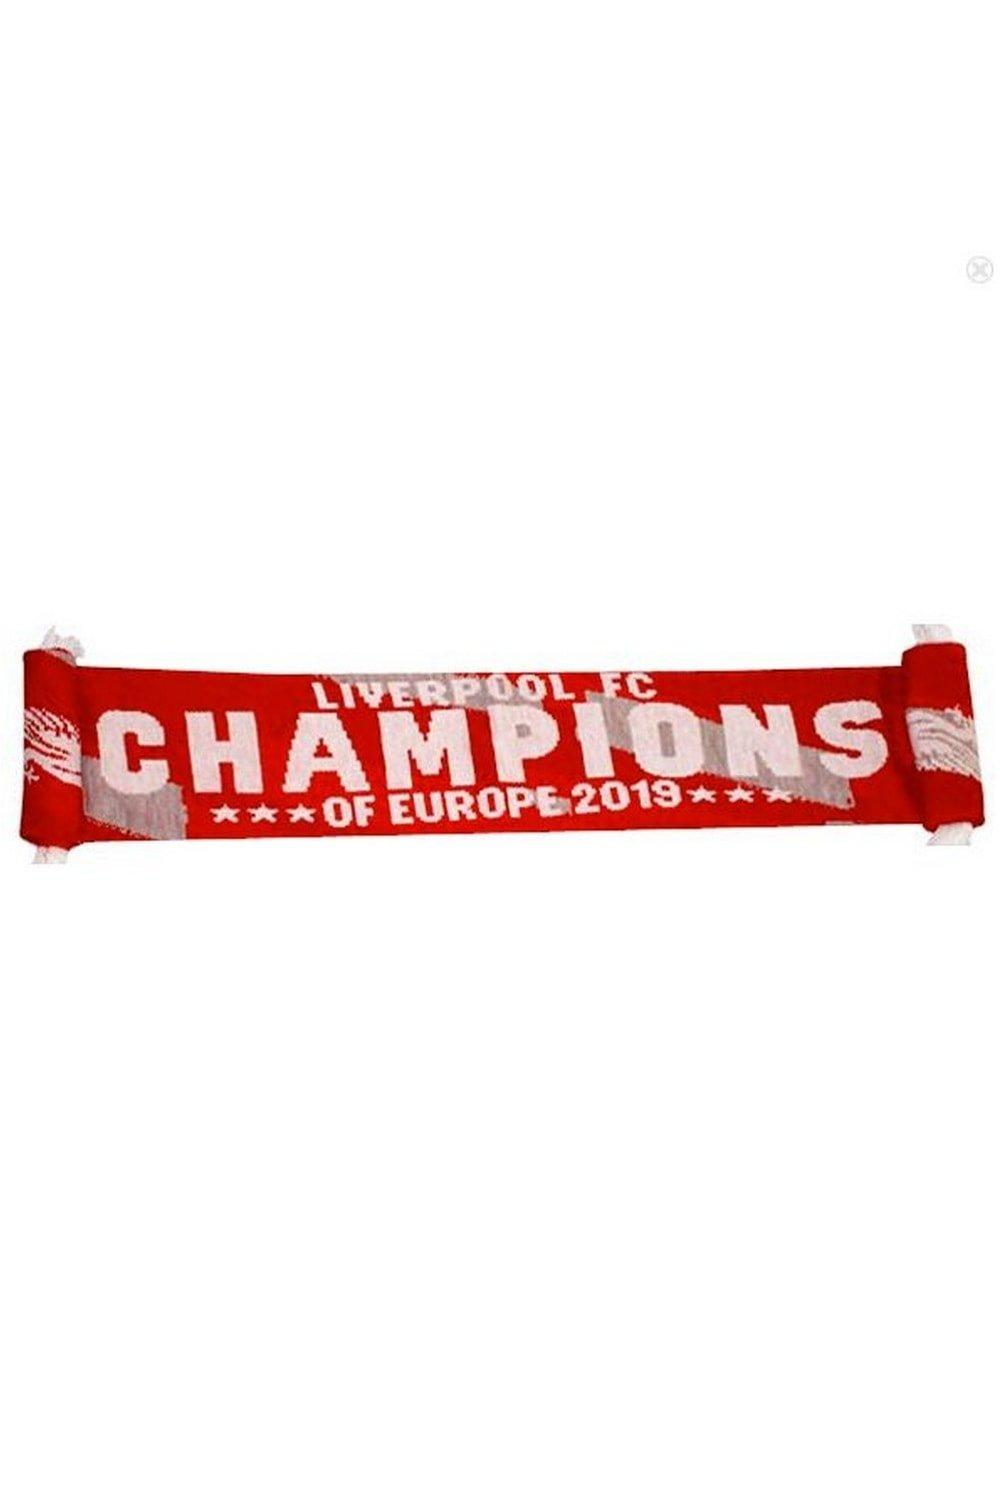 Шарф Чемпионы Европы 2019 Liverpool FC, красный